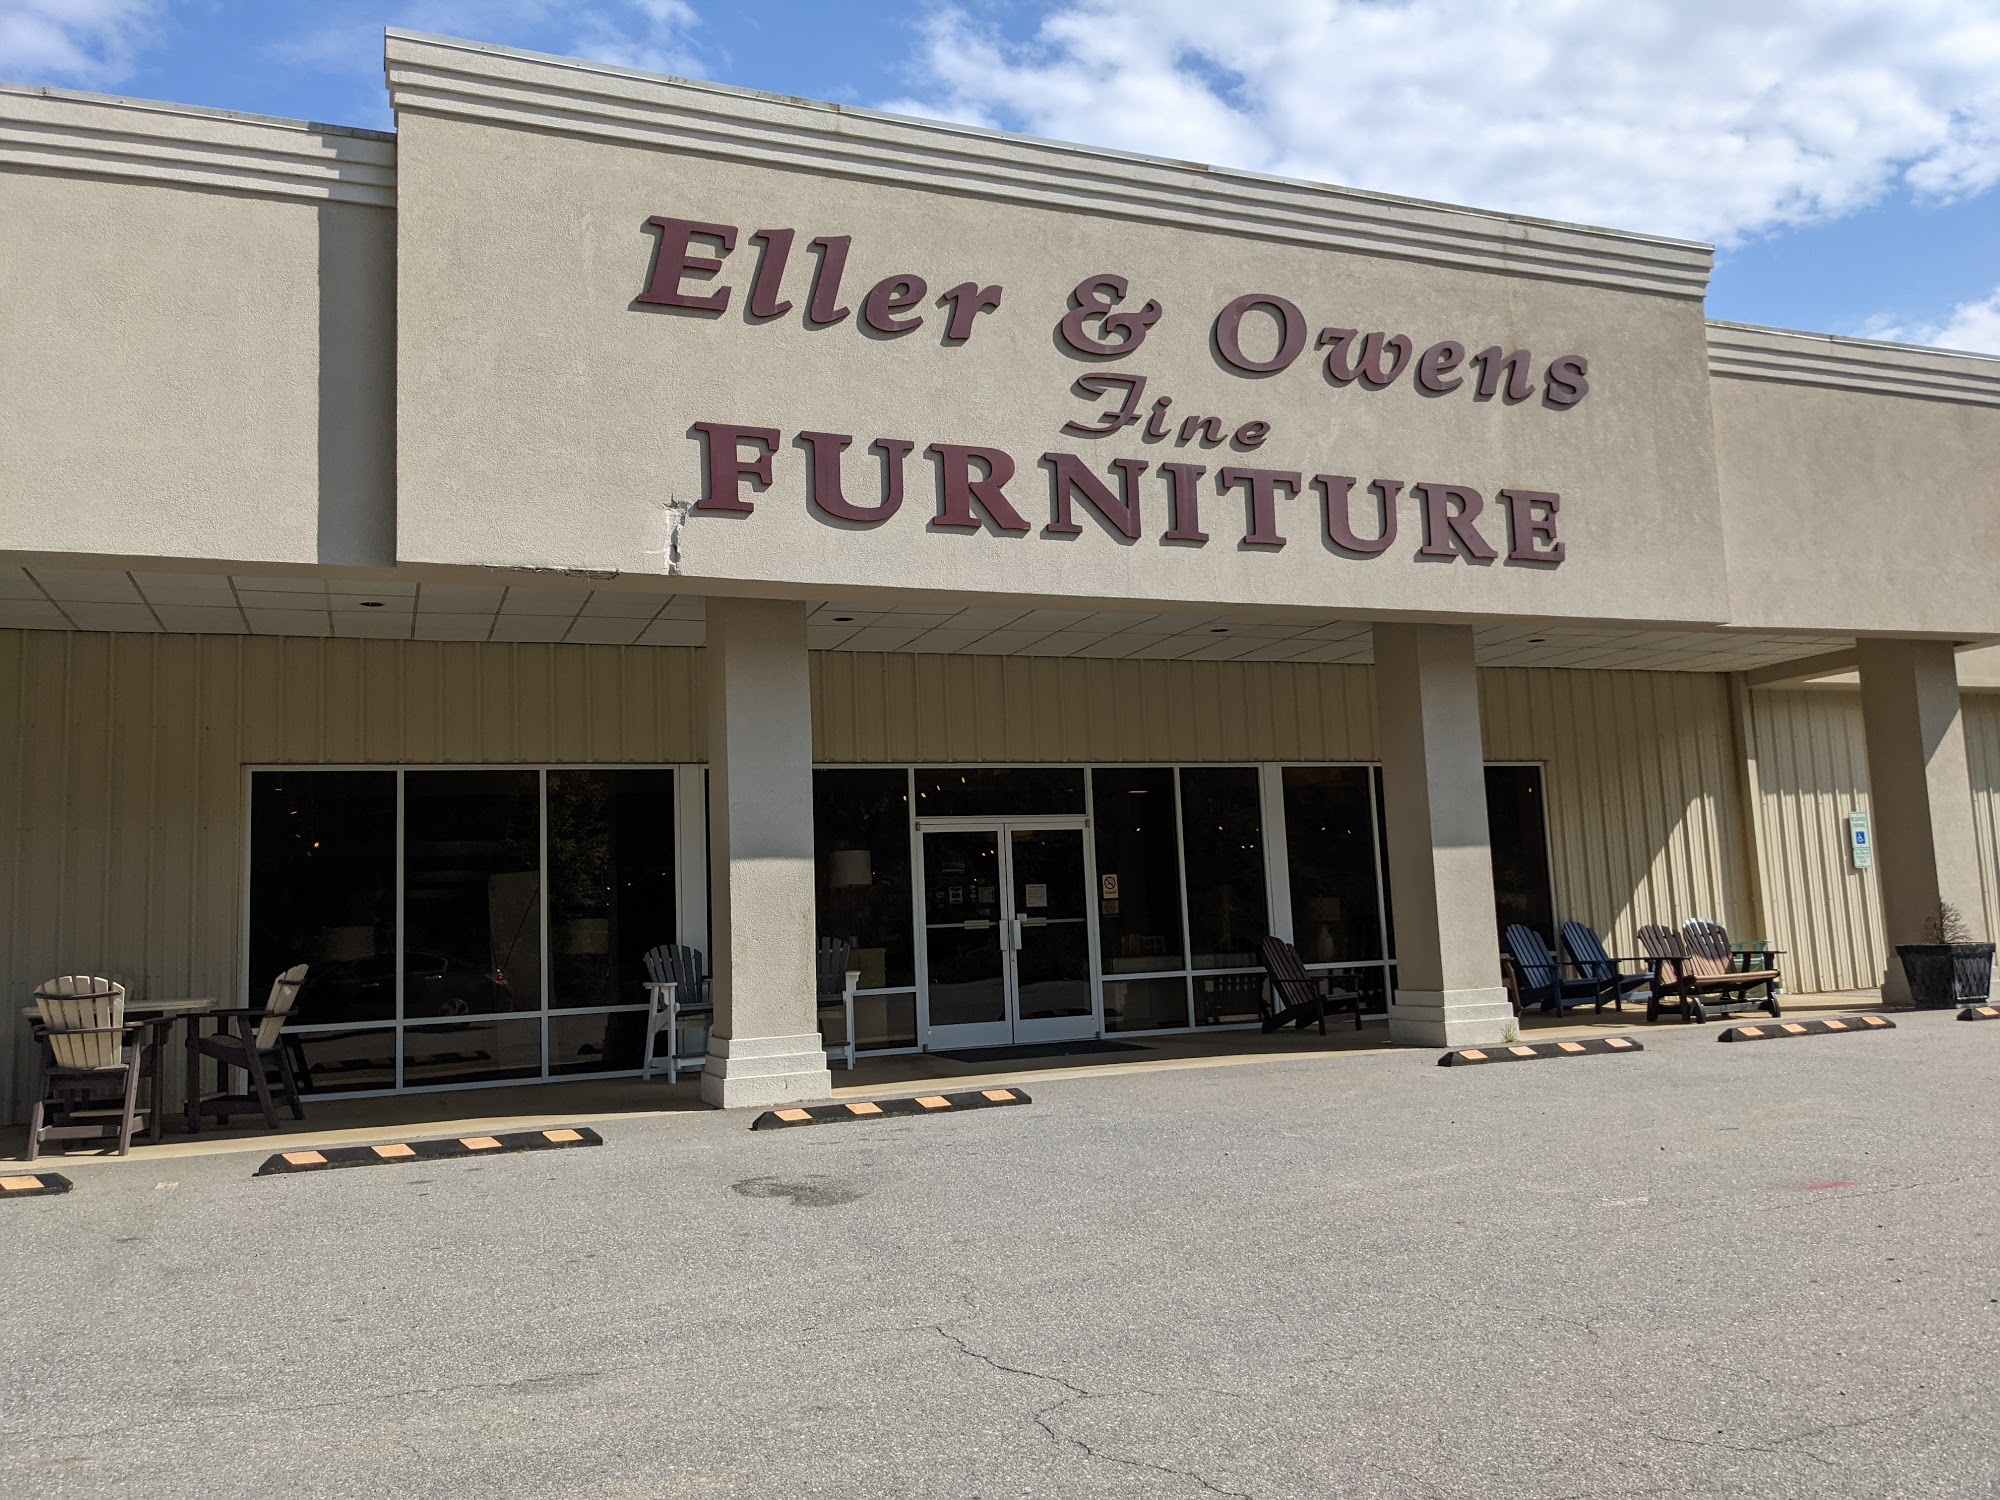 Eller & Owens Furniture